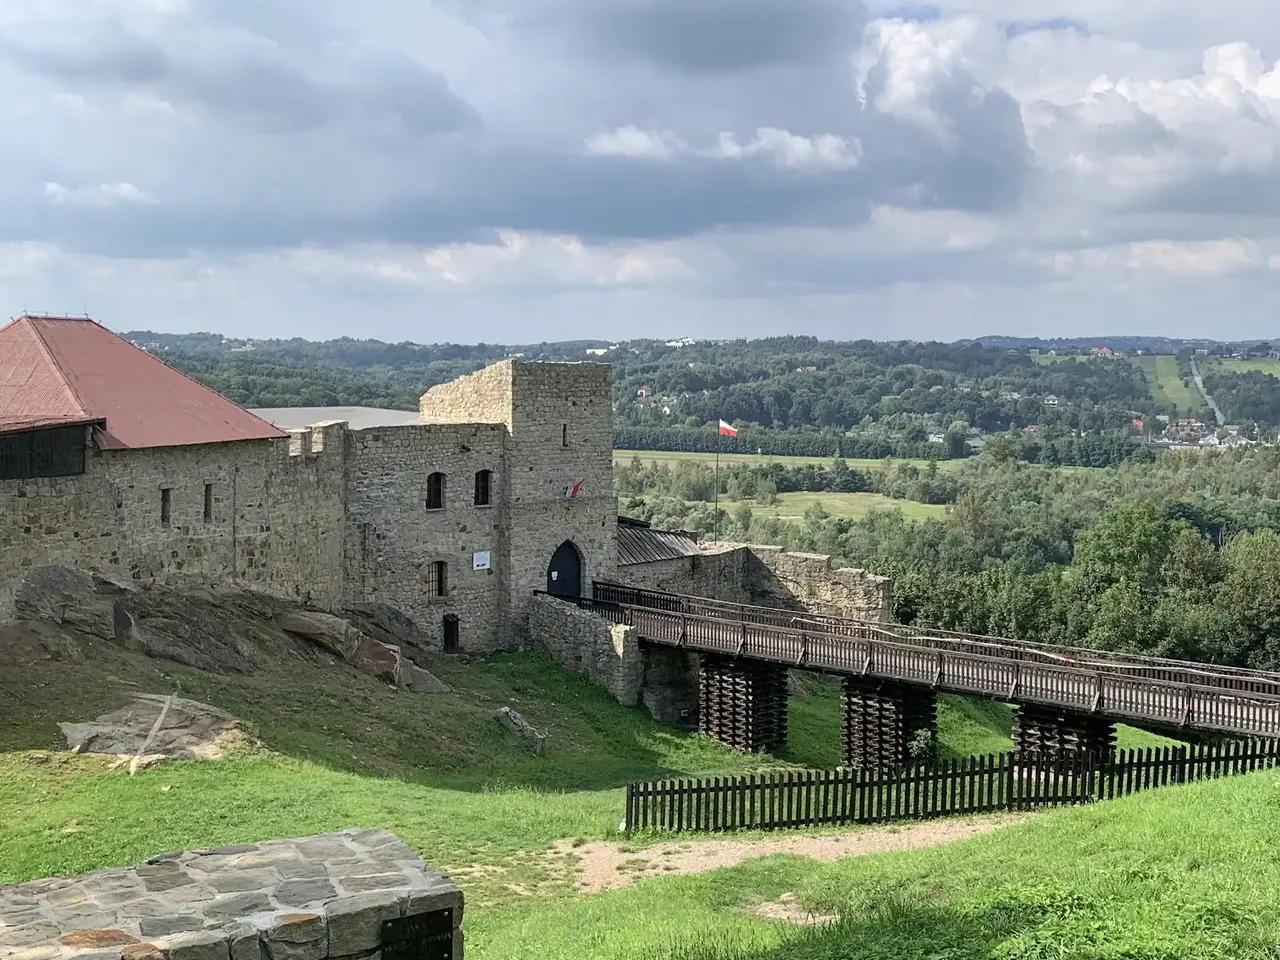 Zamek w Dobczycach